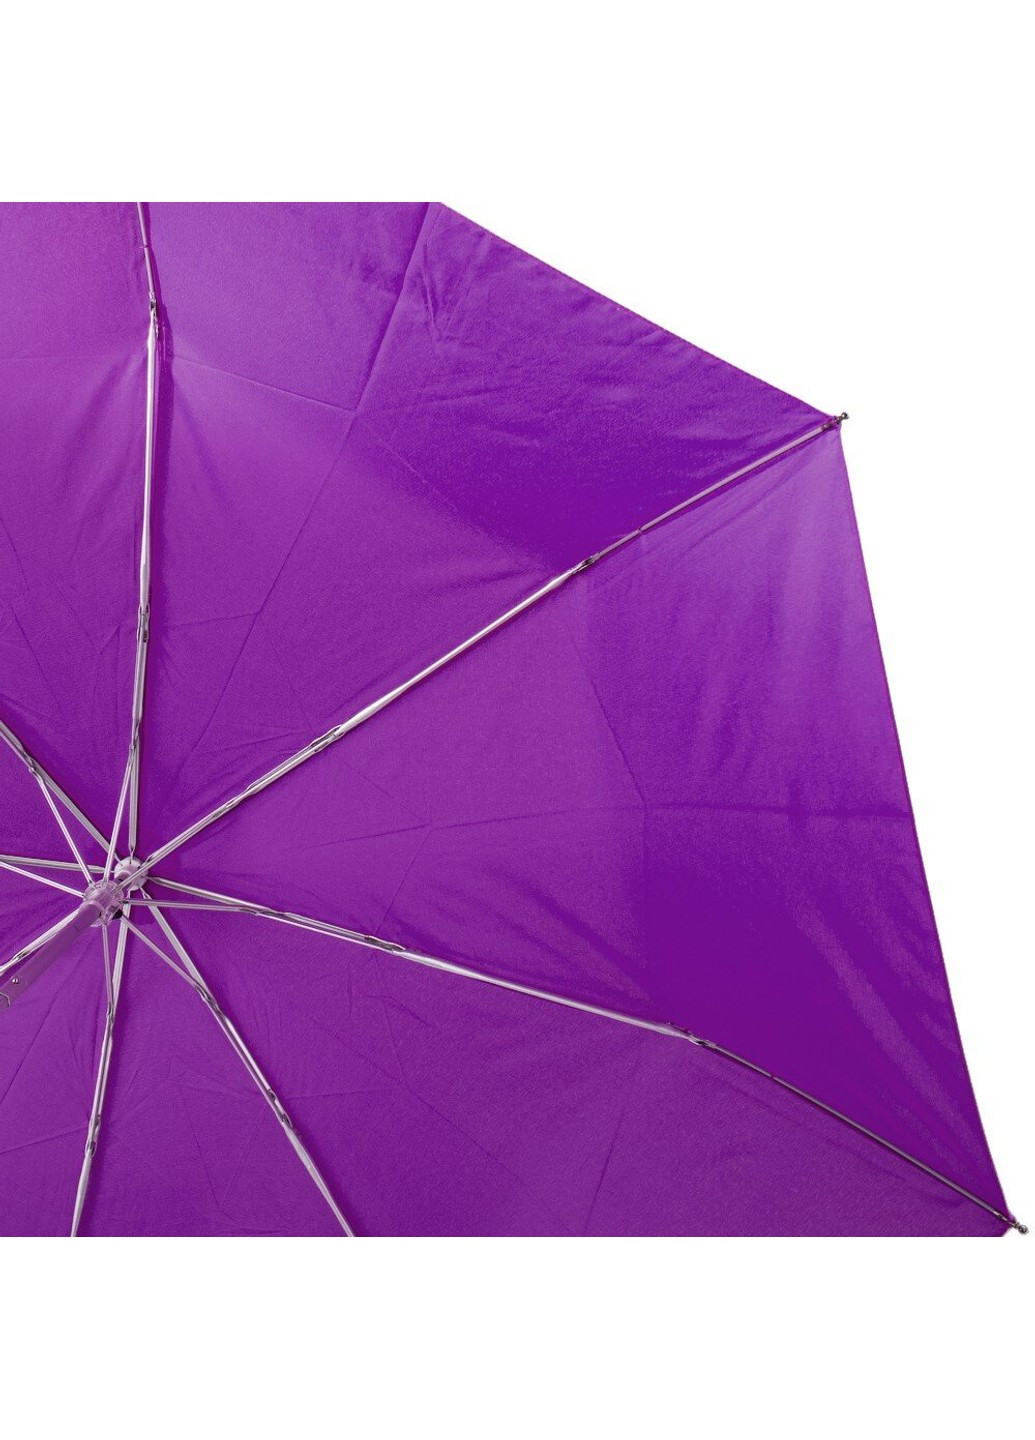 Механический женский зонтик U42651-9 Happy Rain (262975825)